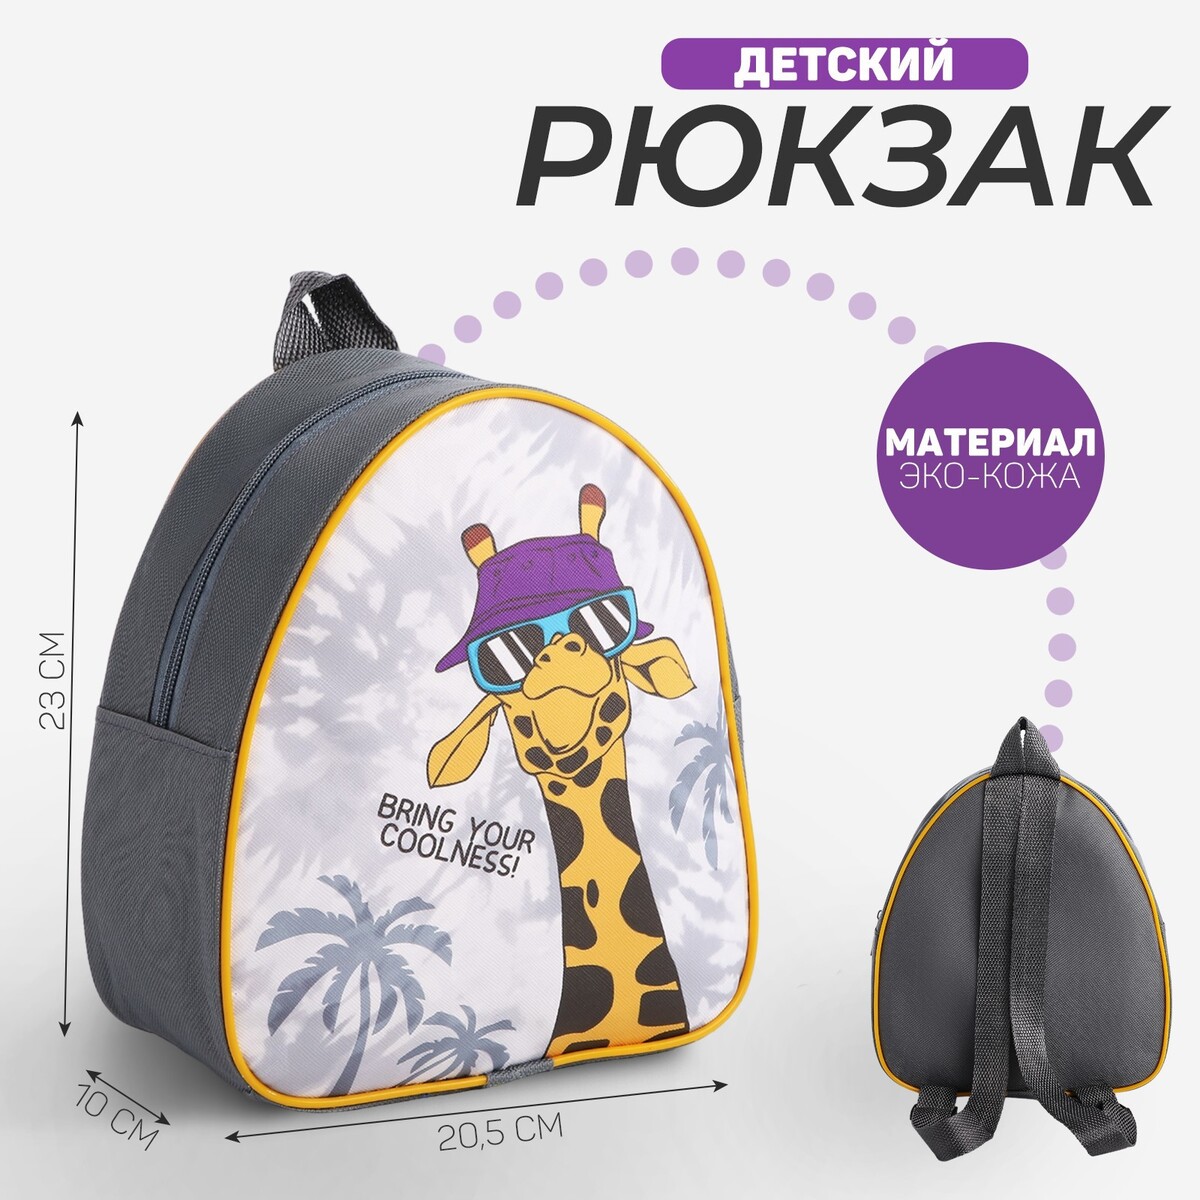 Рюкзак детский рюкзак в походном стиле из коллекции kamchatka детский